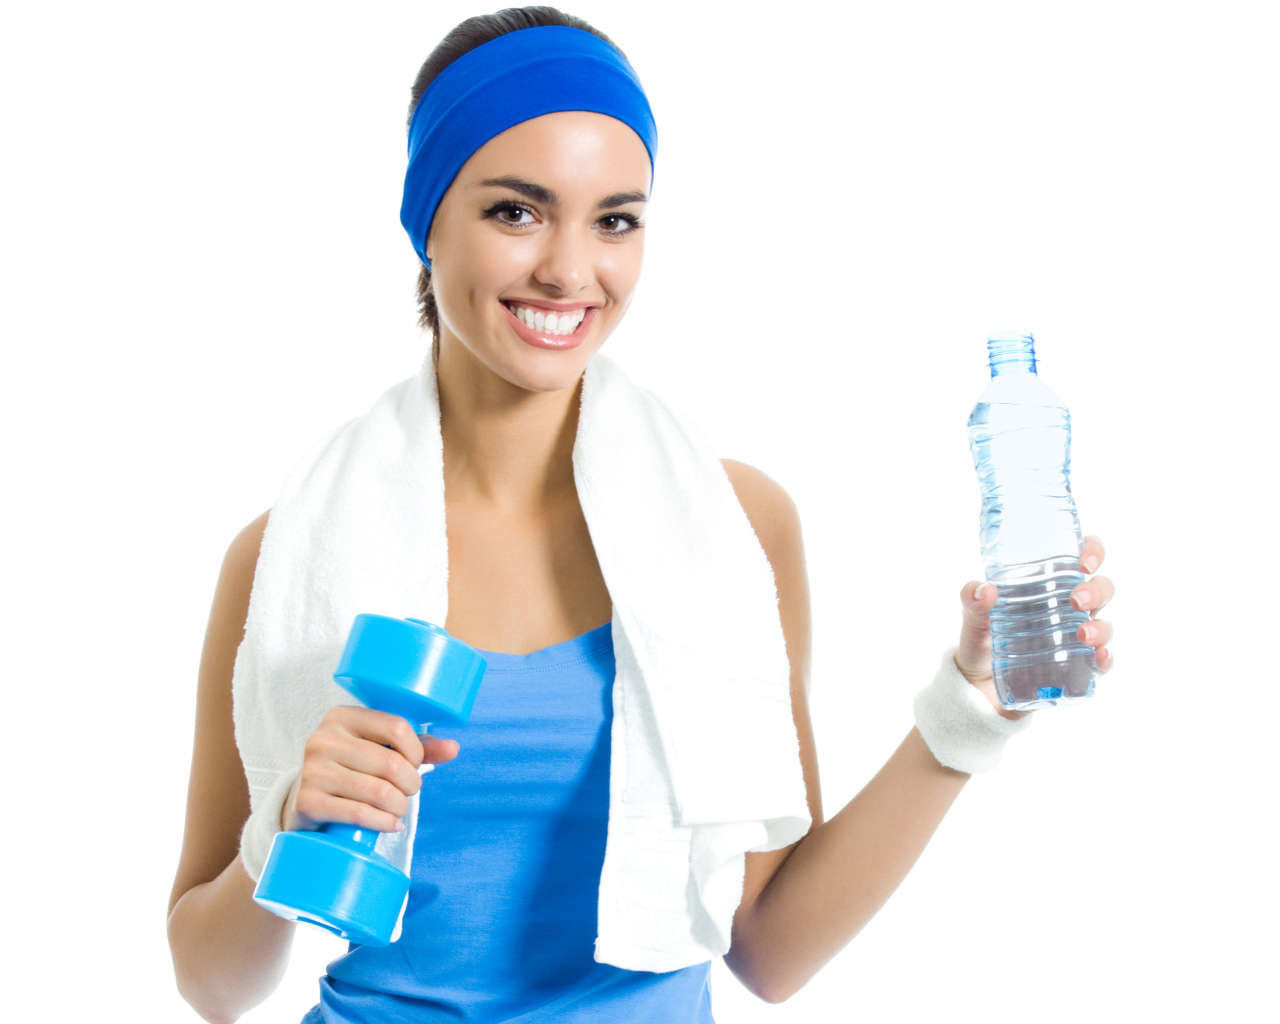 Спортивная девушка с гантелей с бутылкой воды в руке 